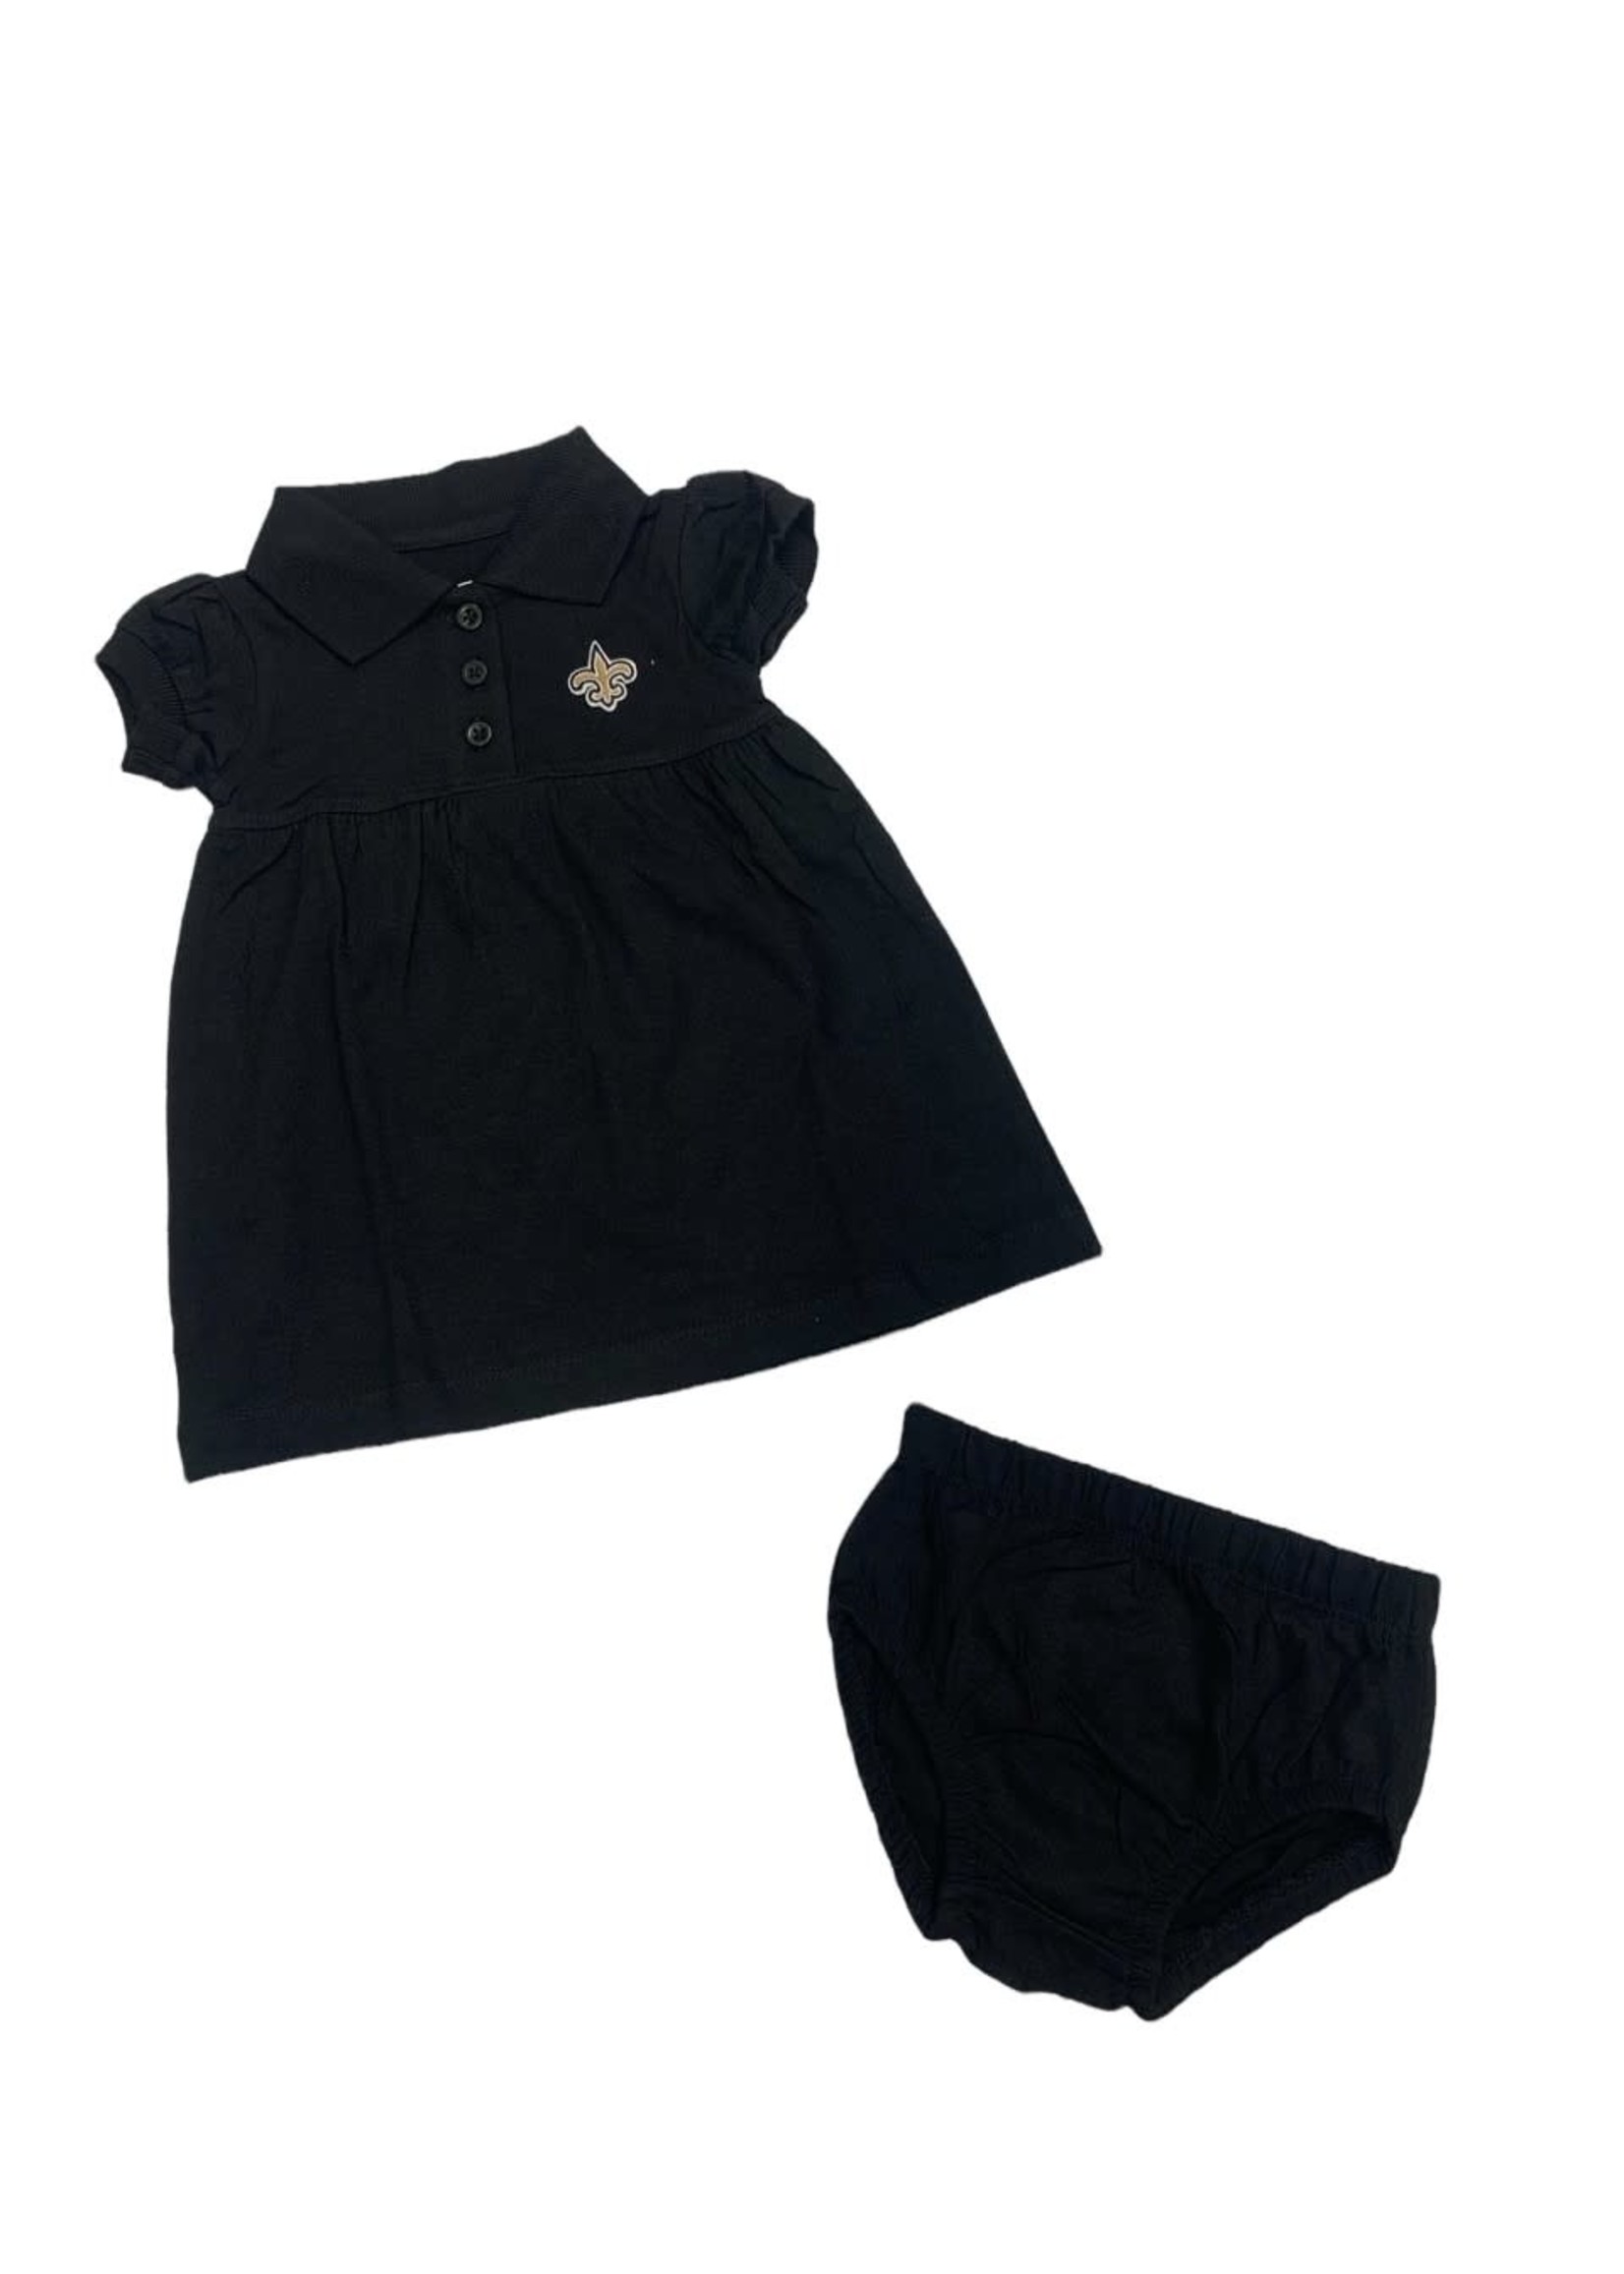 Creative Knitwear Saints - Black Polo Dress - 412